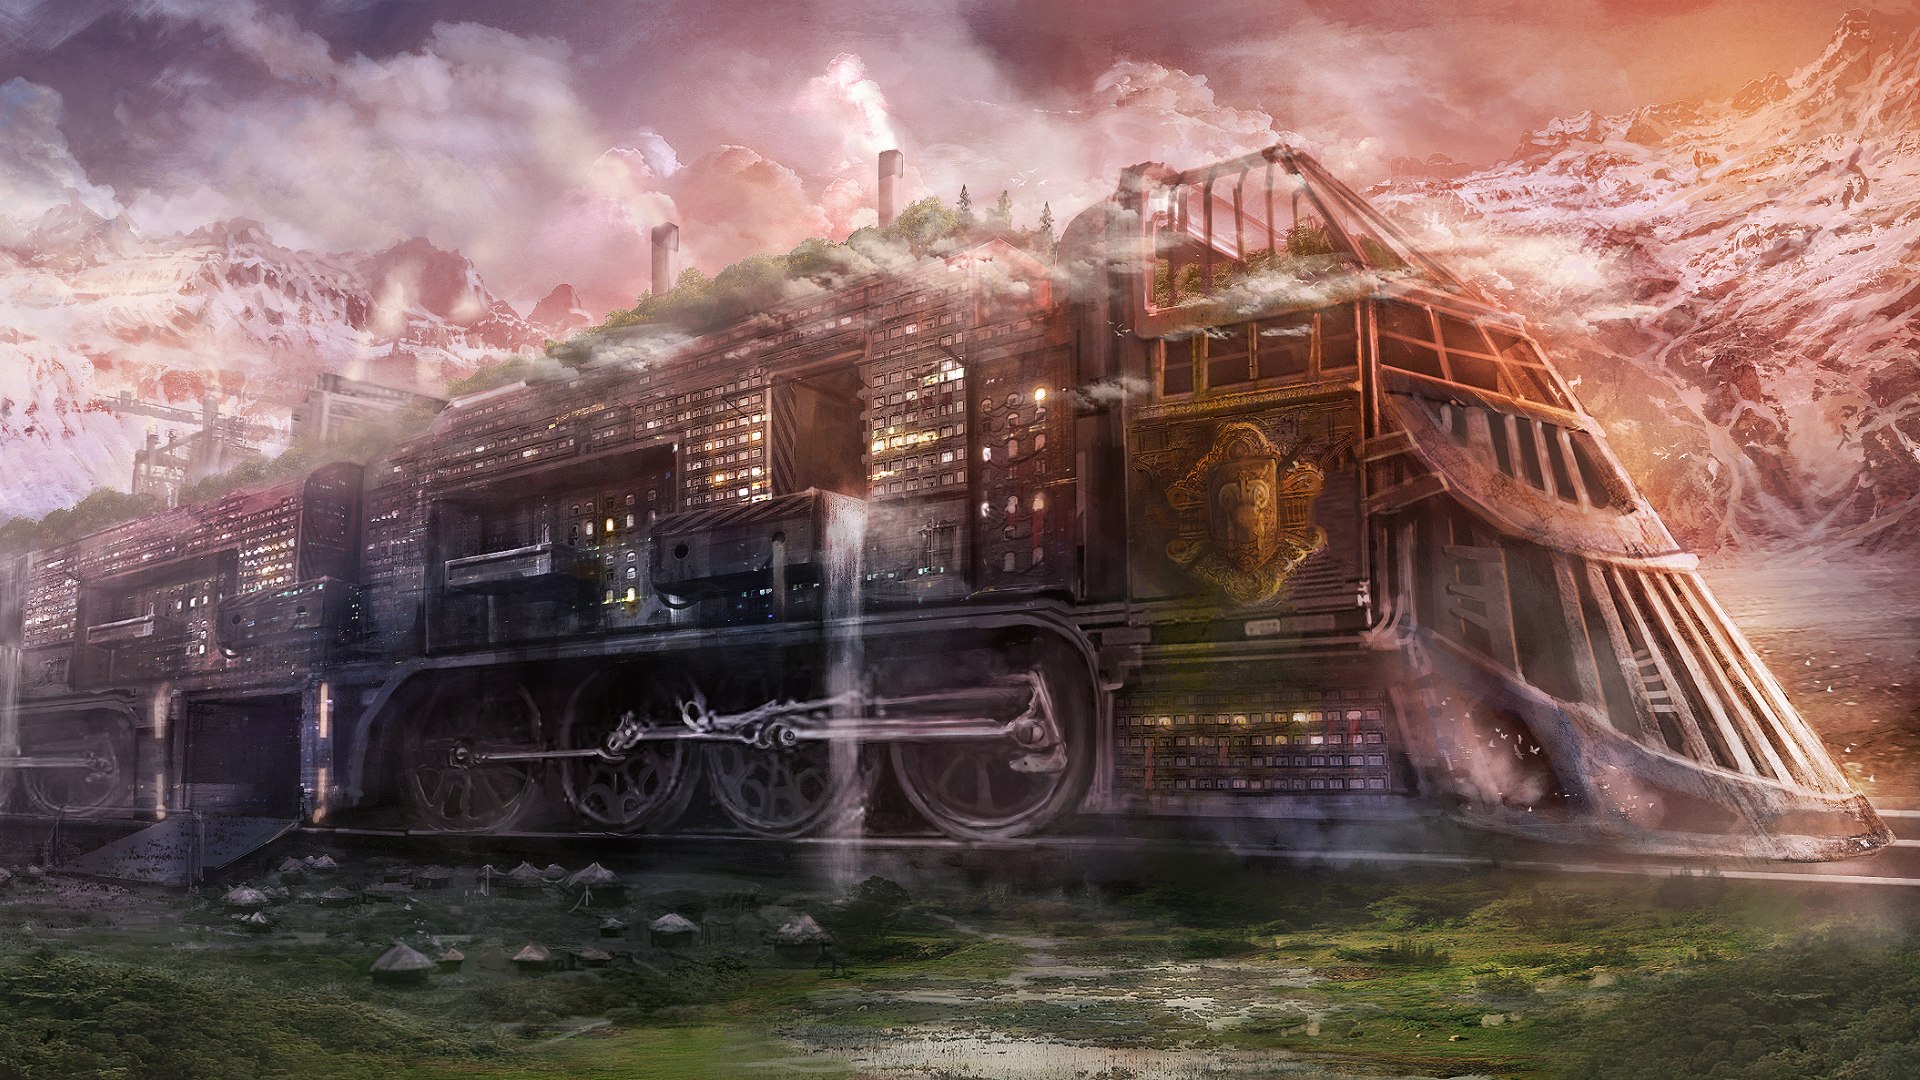  futuristic railroad train cities locomotive steam wallpaper background